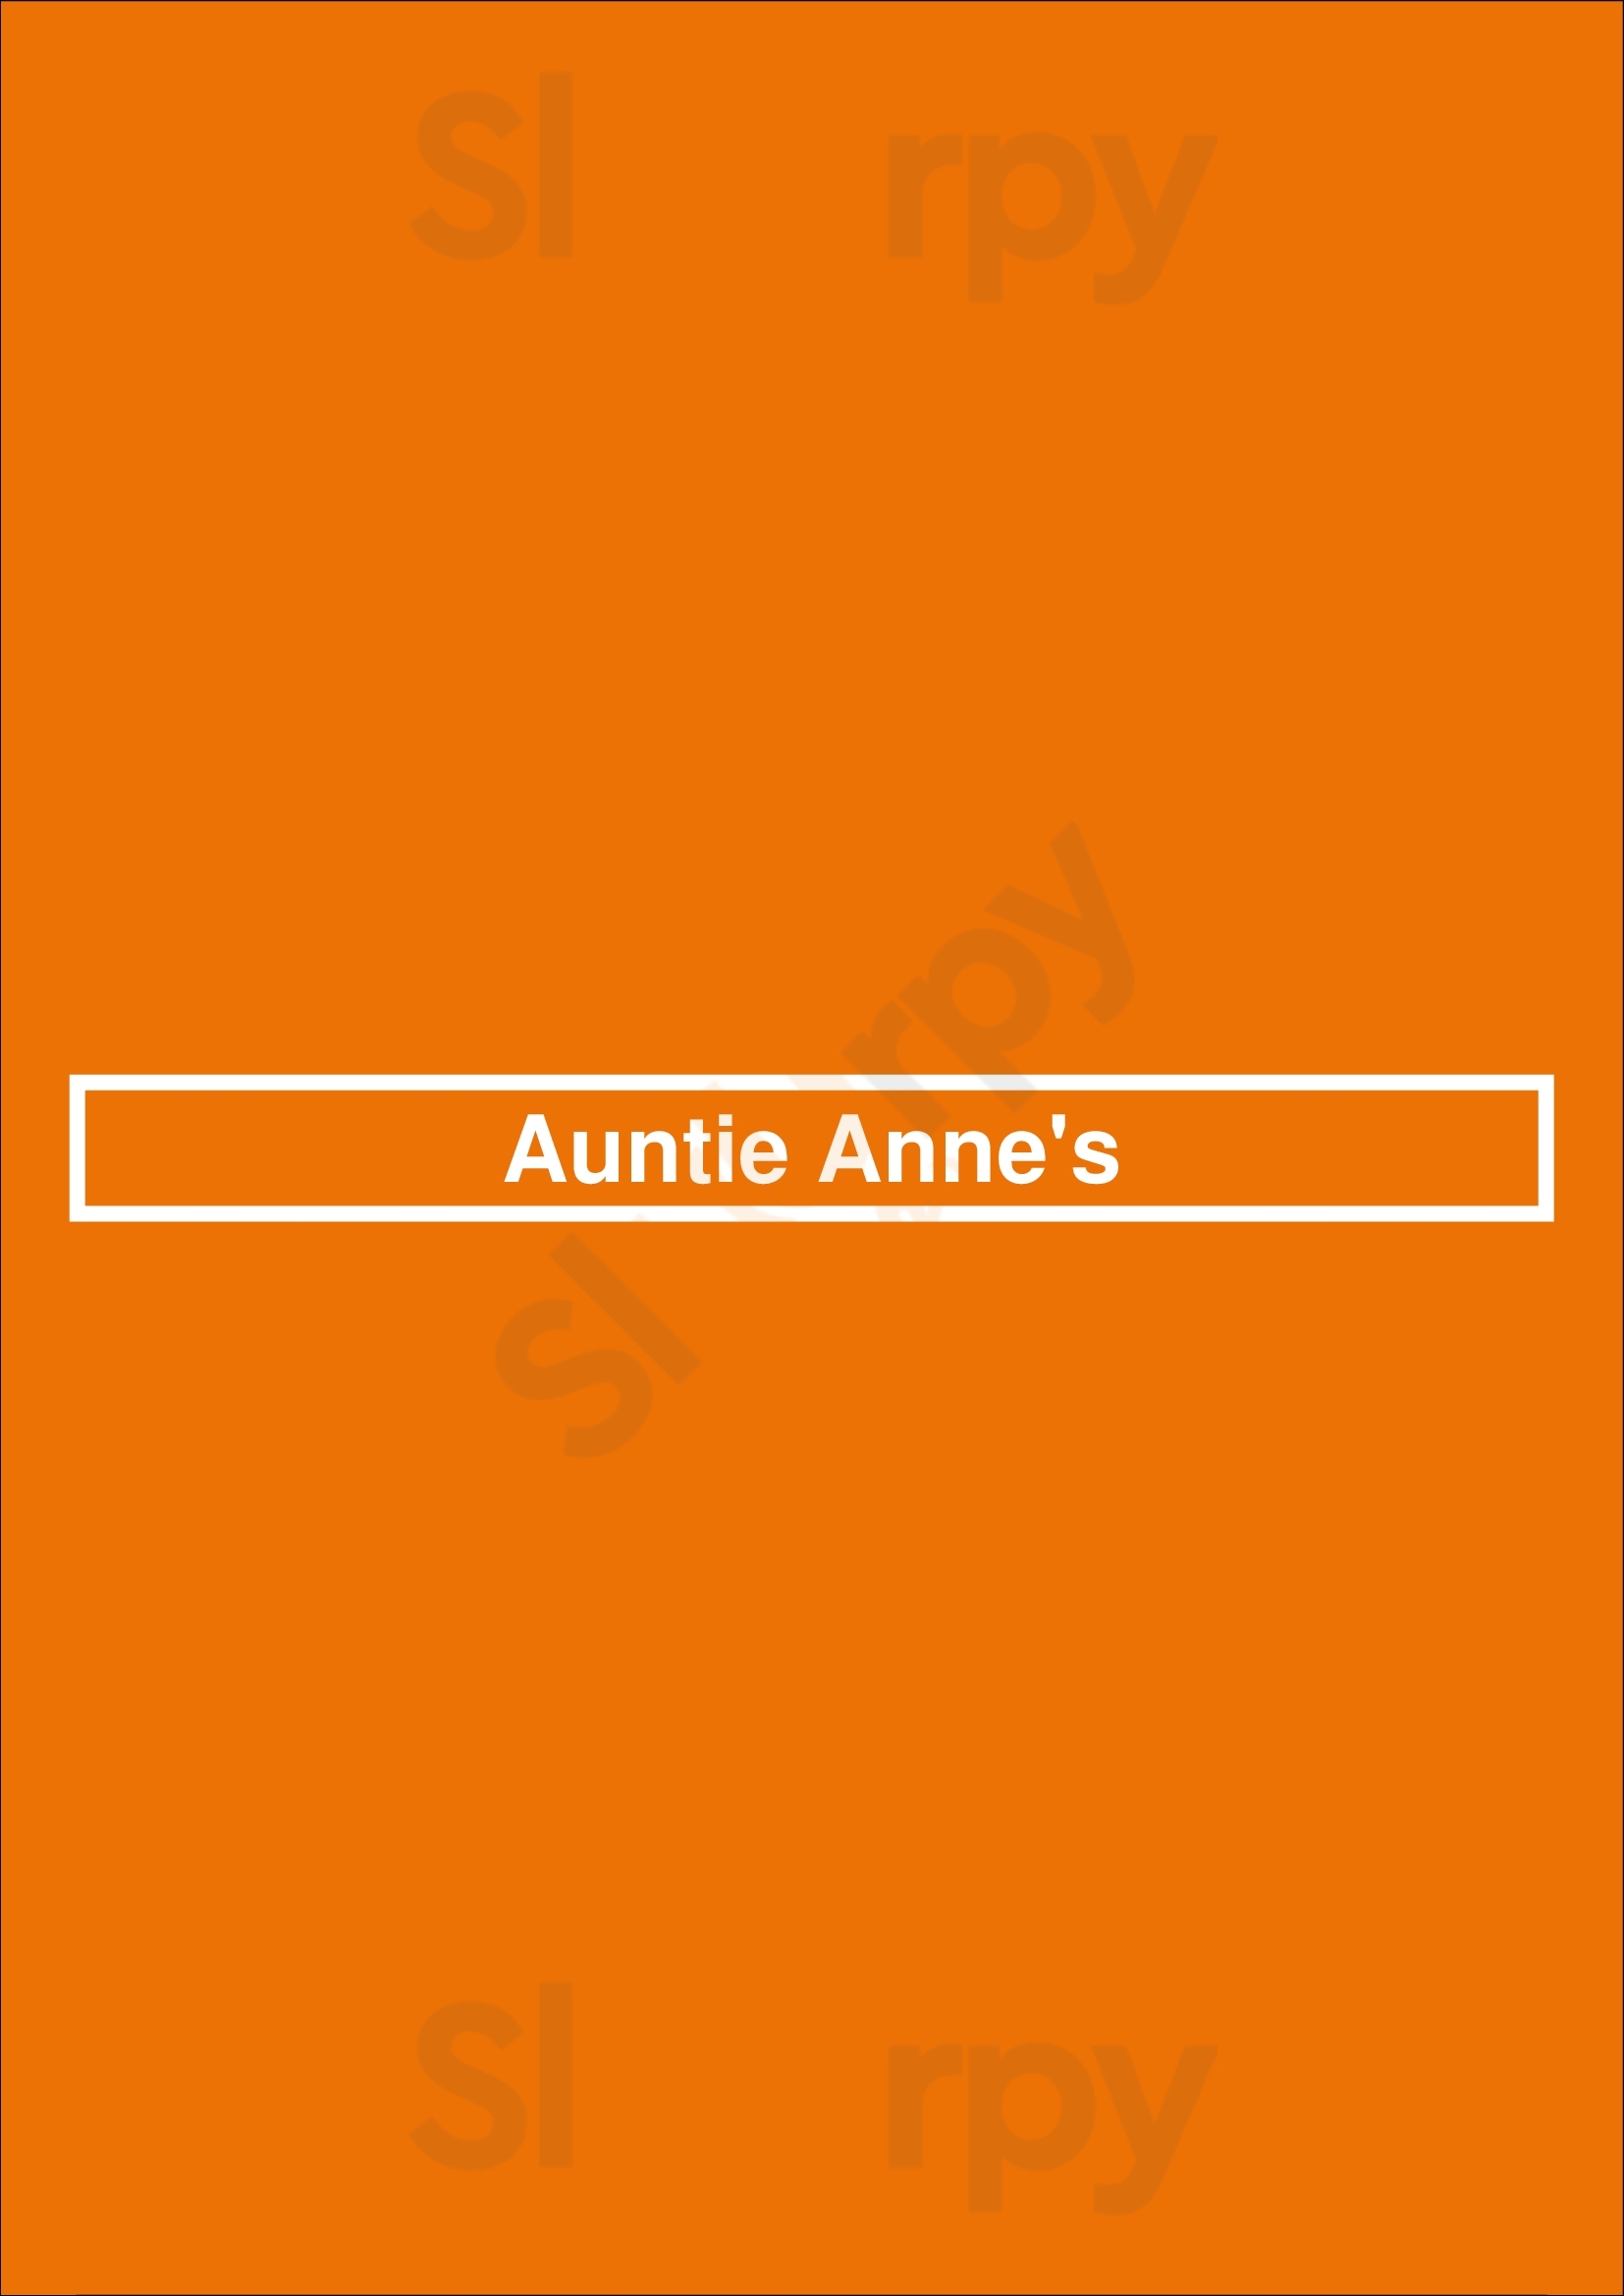 Auntie Anne's Austin Menu - 1